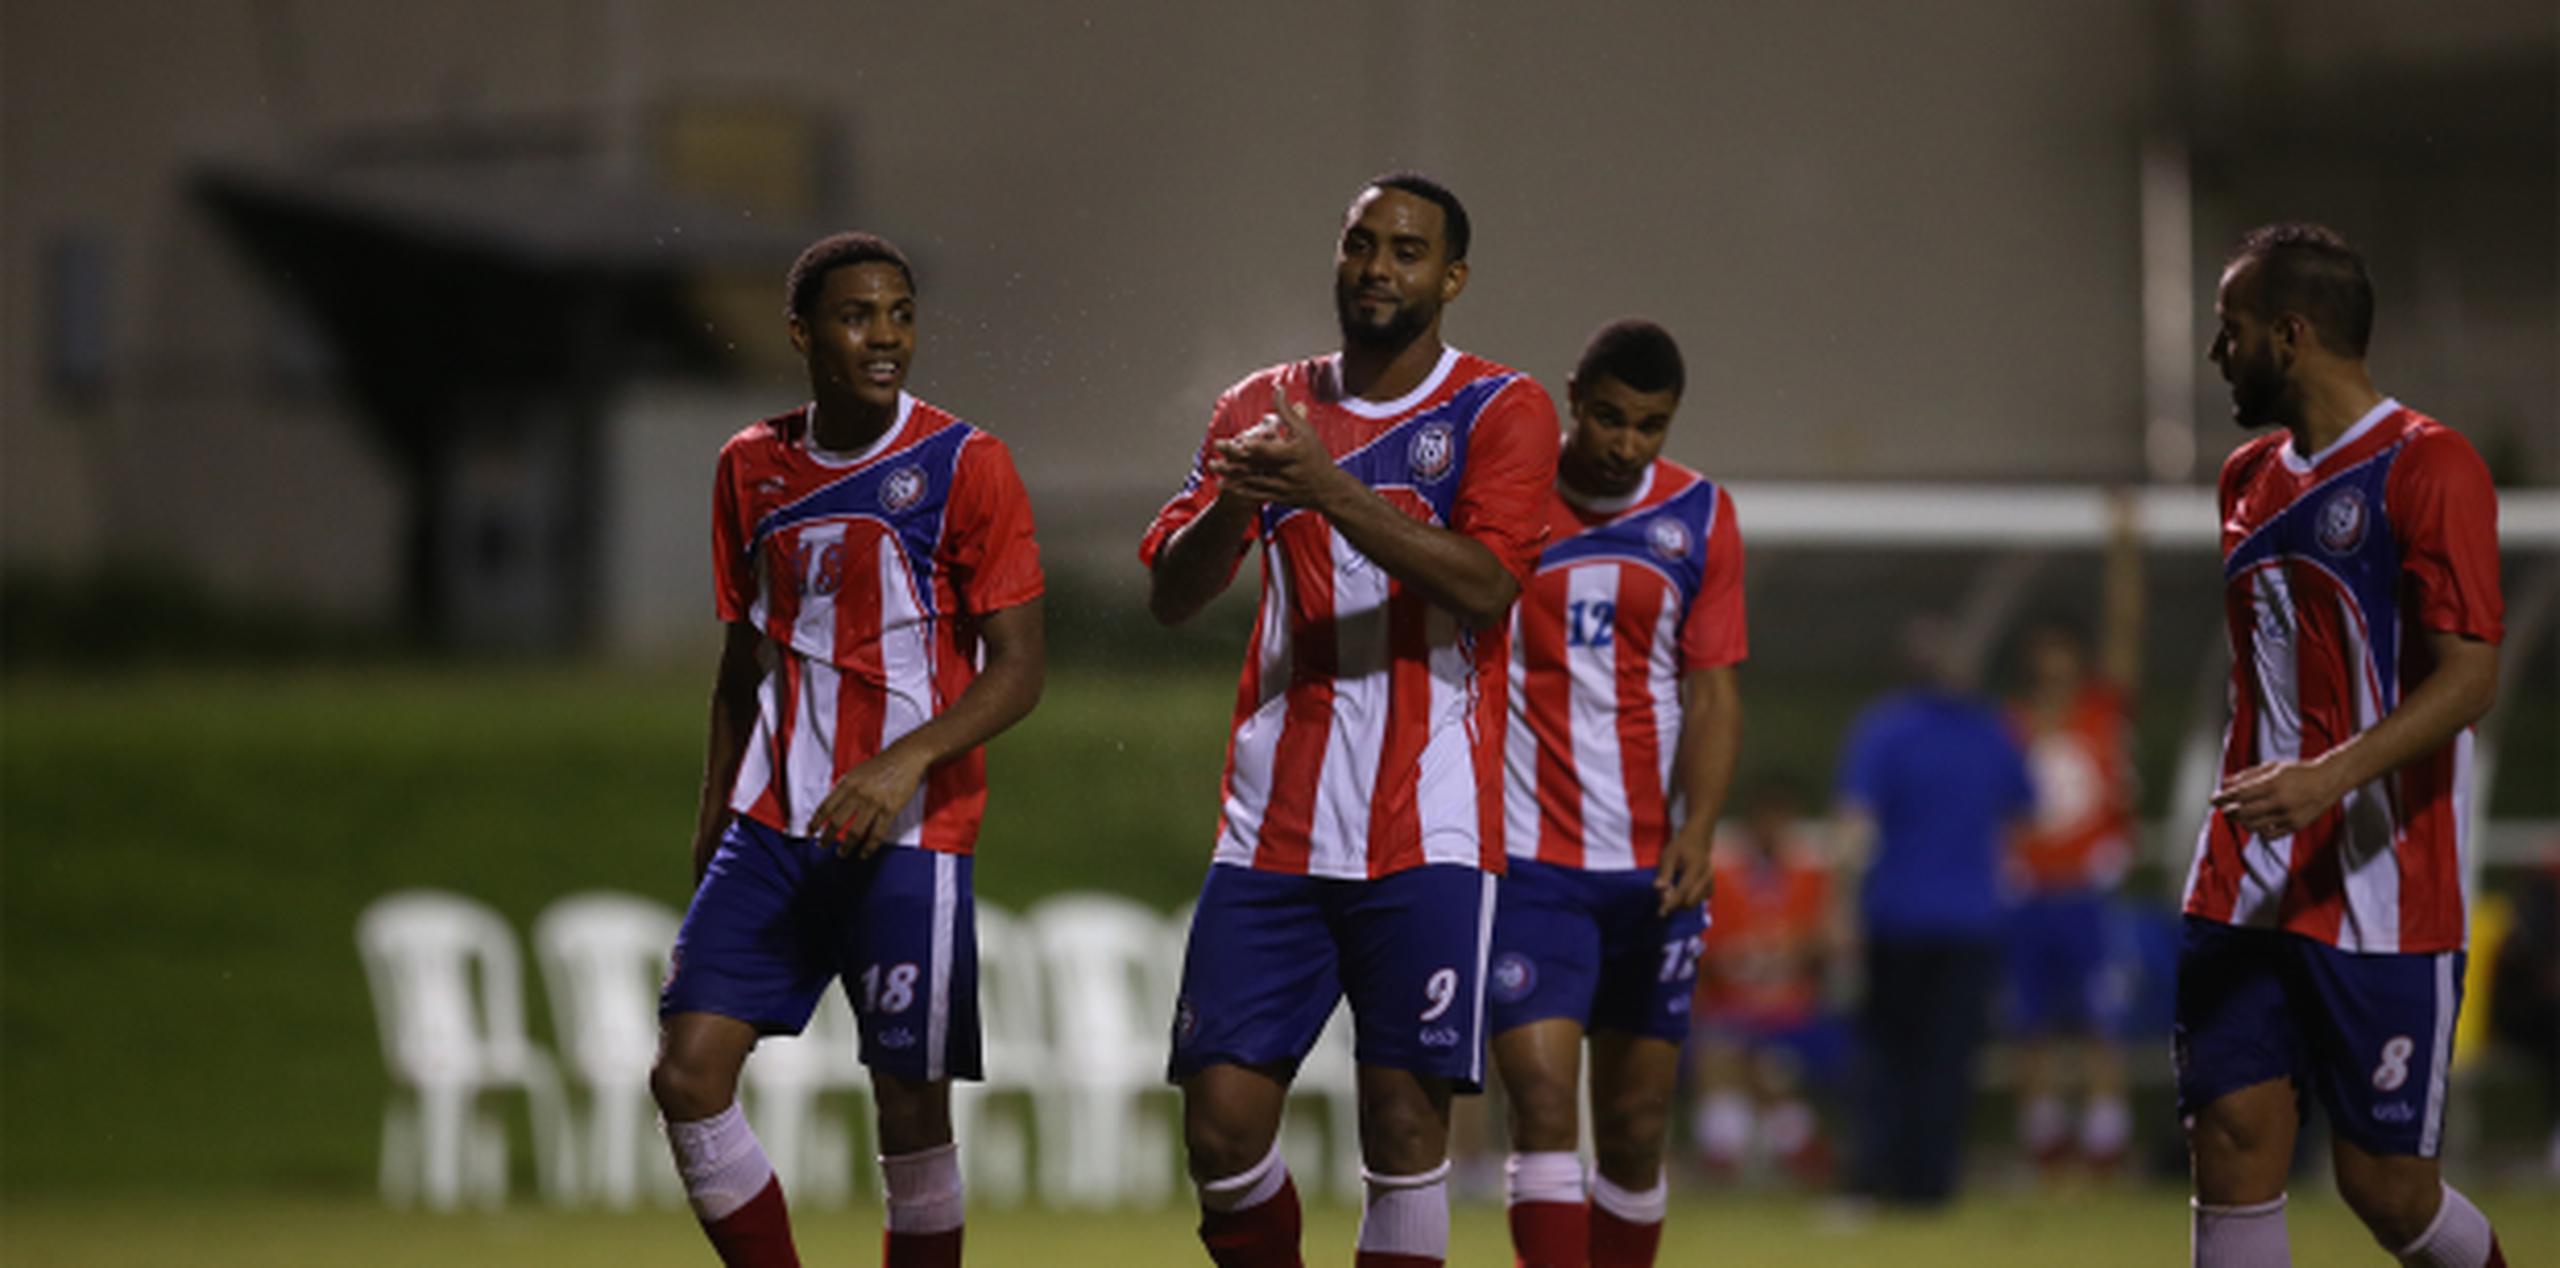 Puerto Rico perdió contra Curazao en tiempo extra 4-2 para perder la oportunidad de entrar a la Copa de Oro. (Foto/ José Cruz Candelaria)